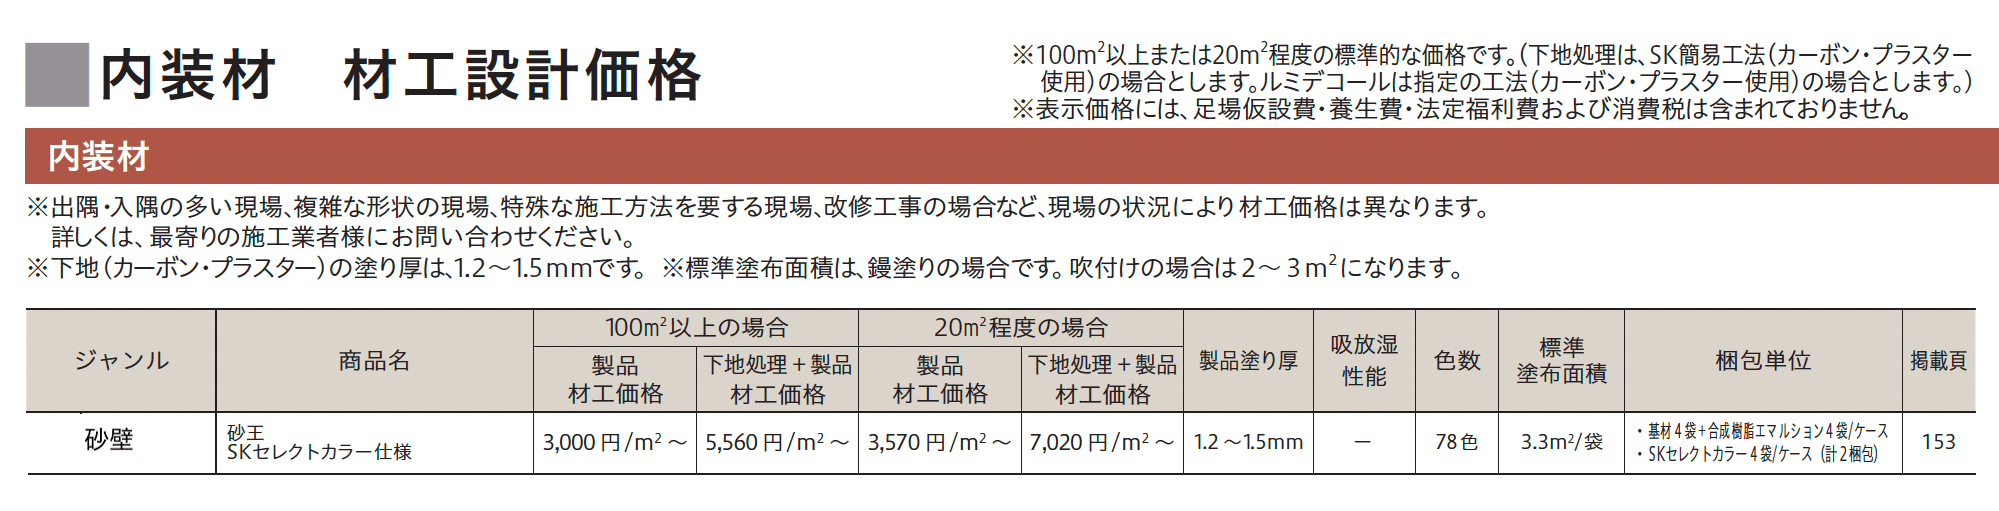 砂 王 SKセレクトカラー仕様【2023年版】_価格_1